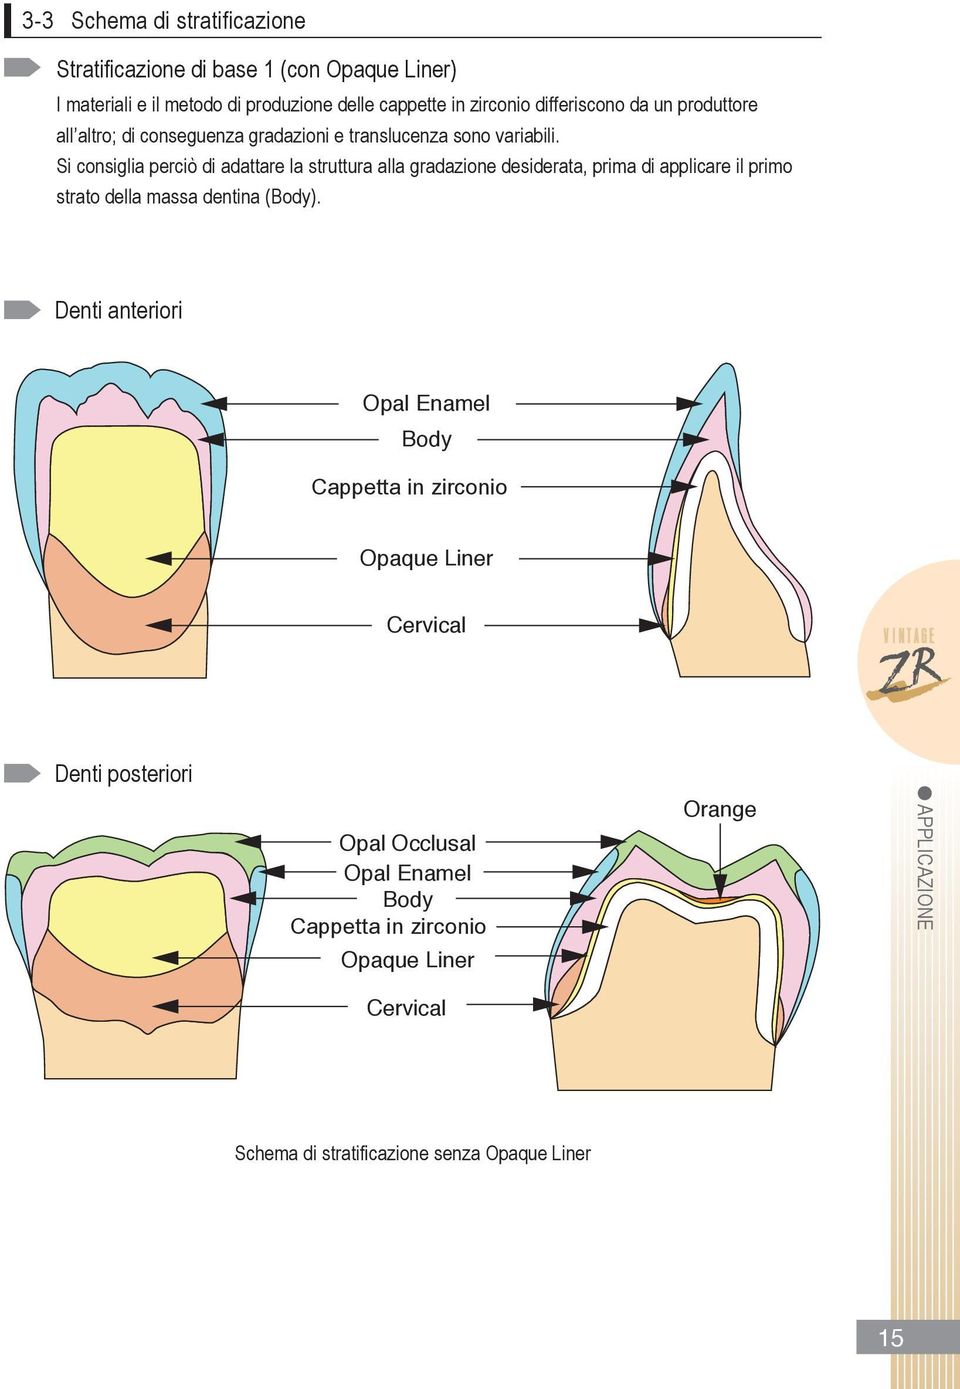 si consiglia perciò di adattare la struttura alla gradazione desiderata, prima di applicare il primo strato della massa dentina (Body).